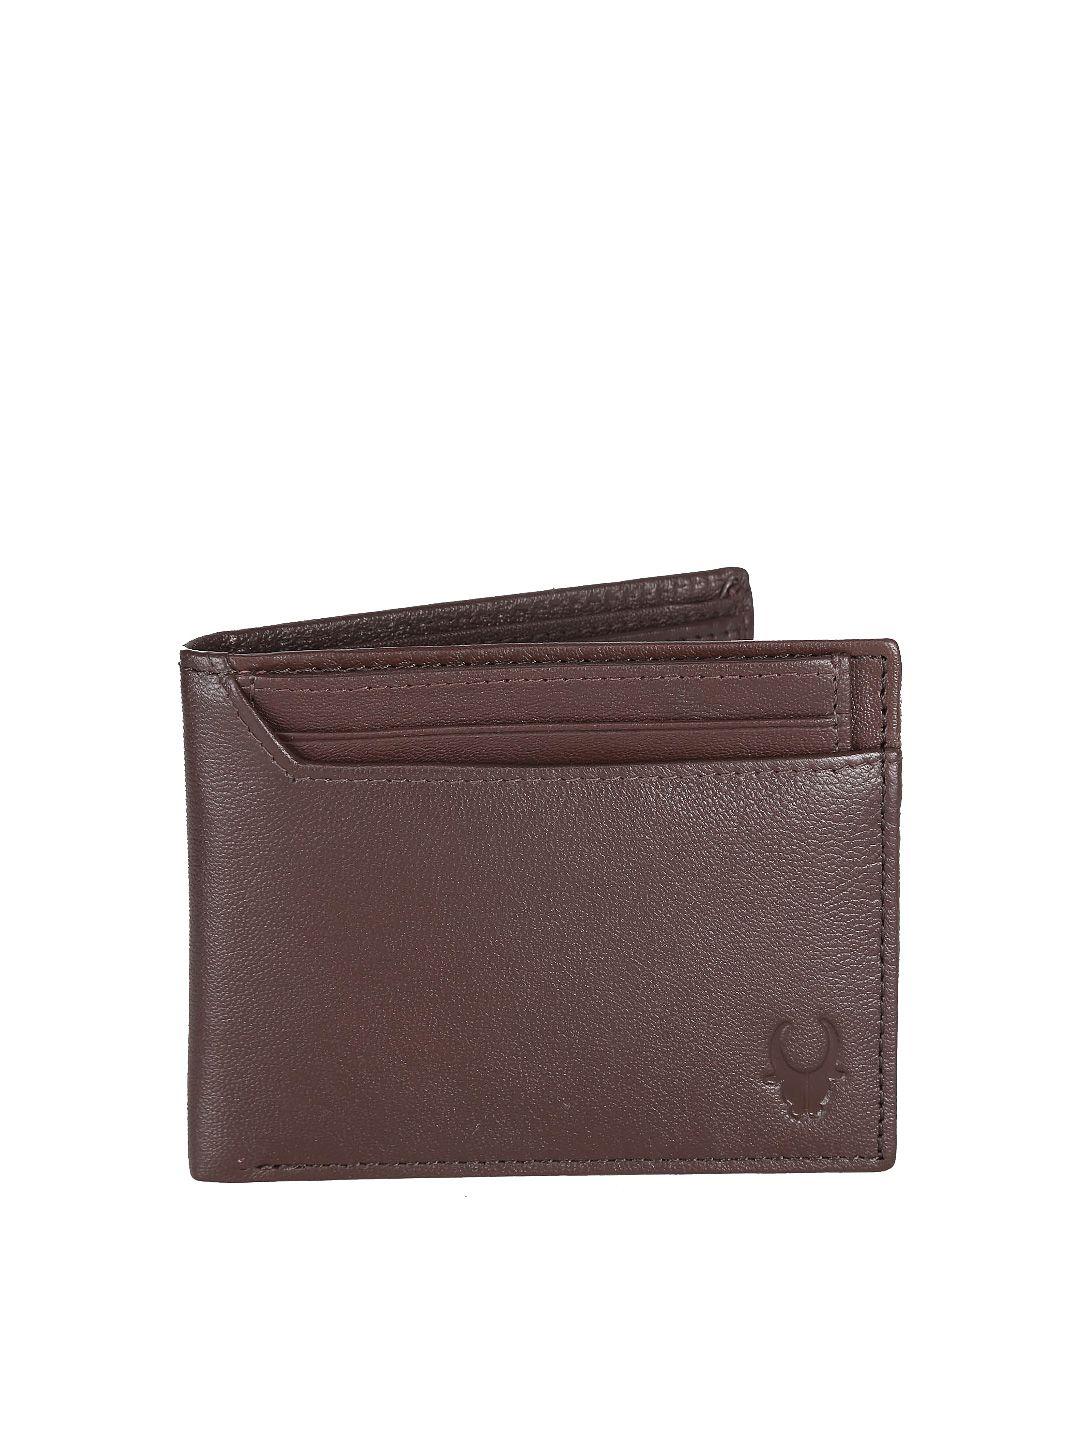 wildhorn unisex brown genuine leather wallet